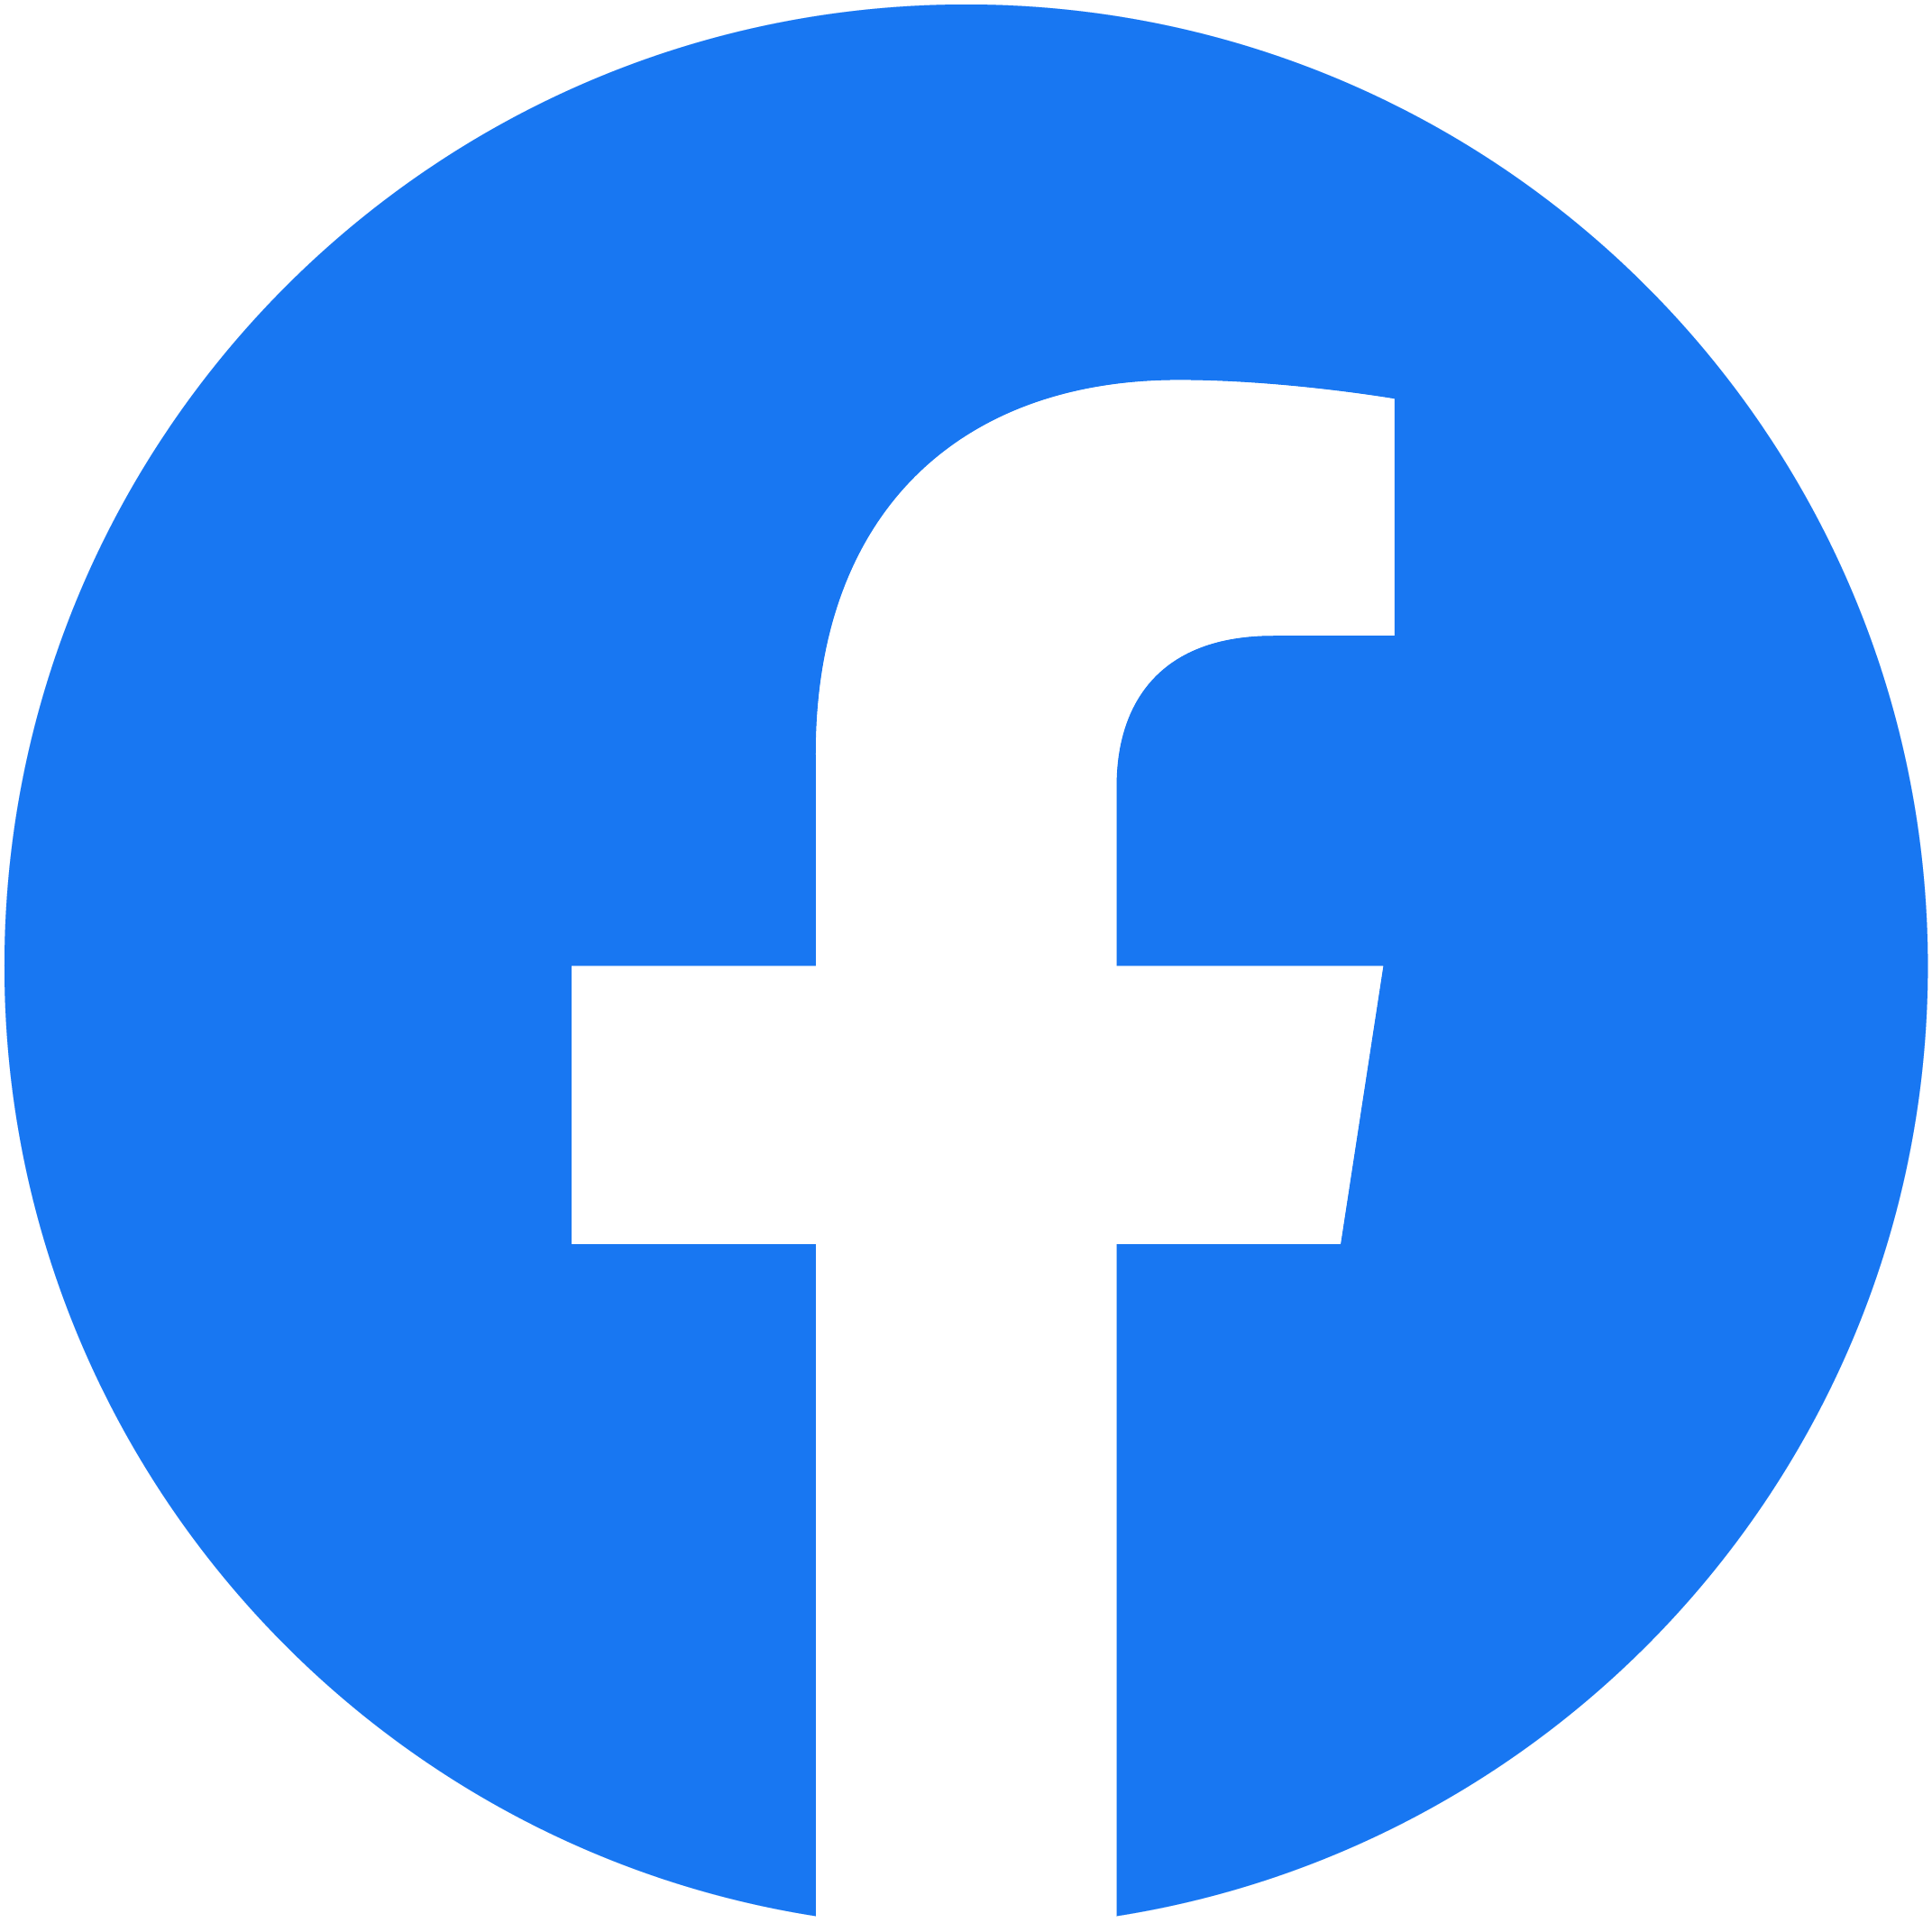 Le logo de la société Facebook